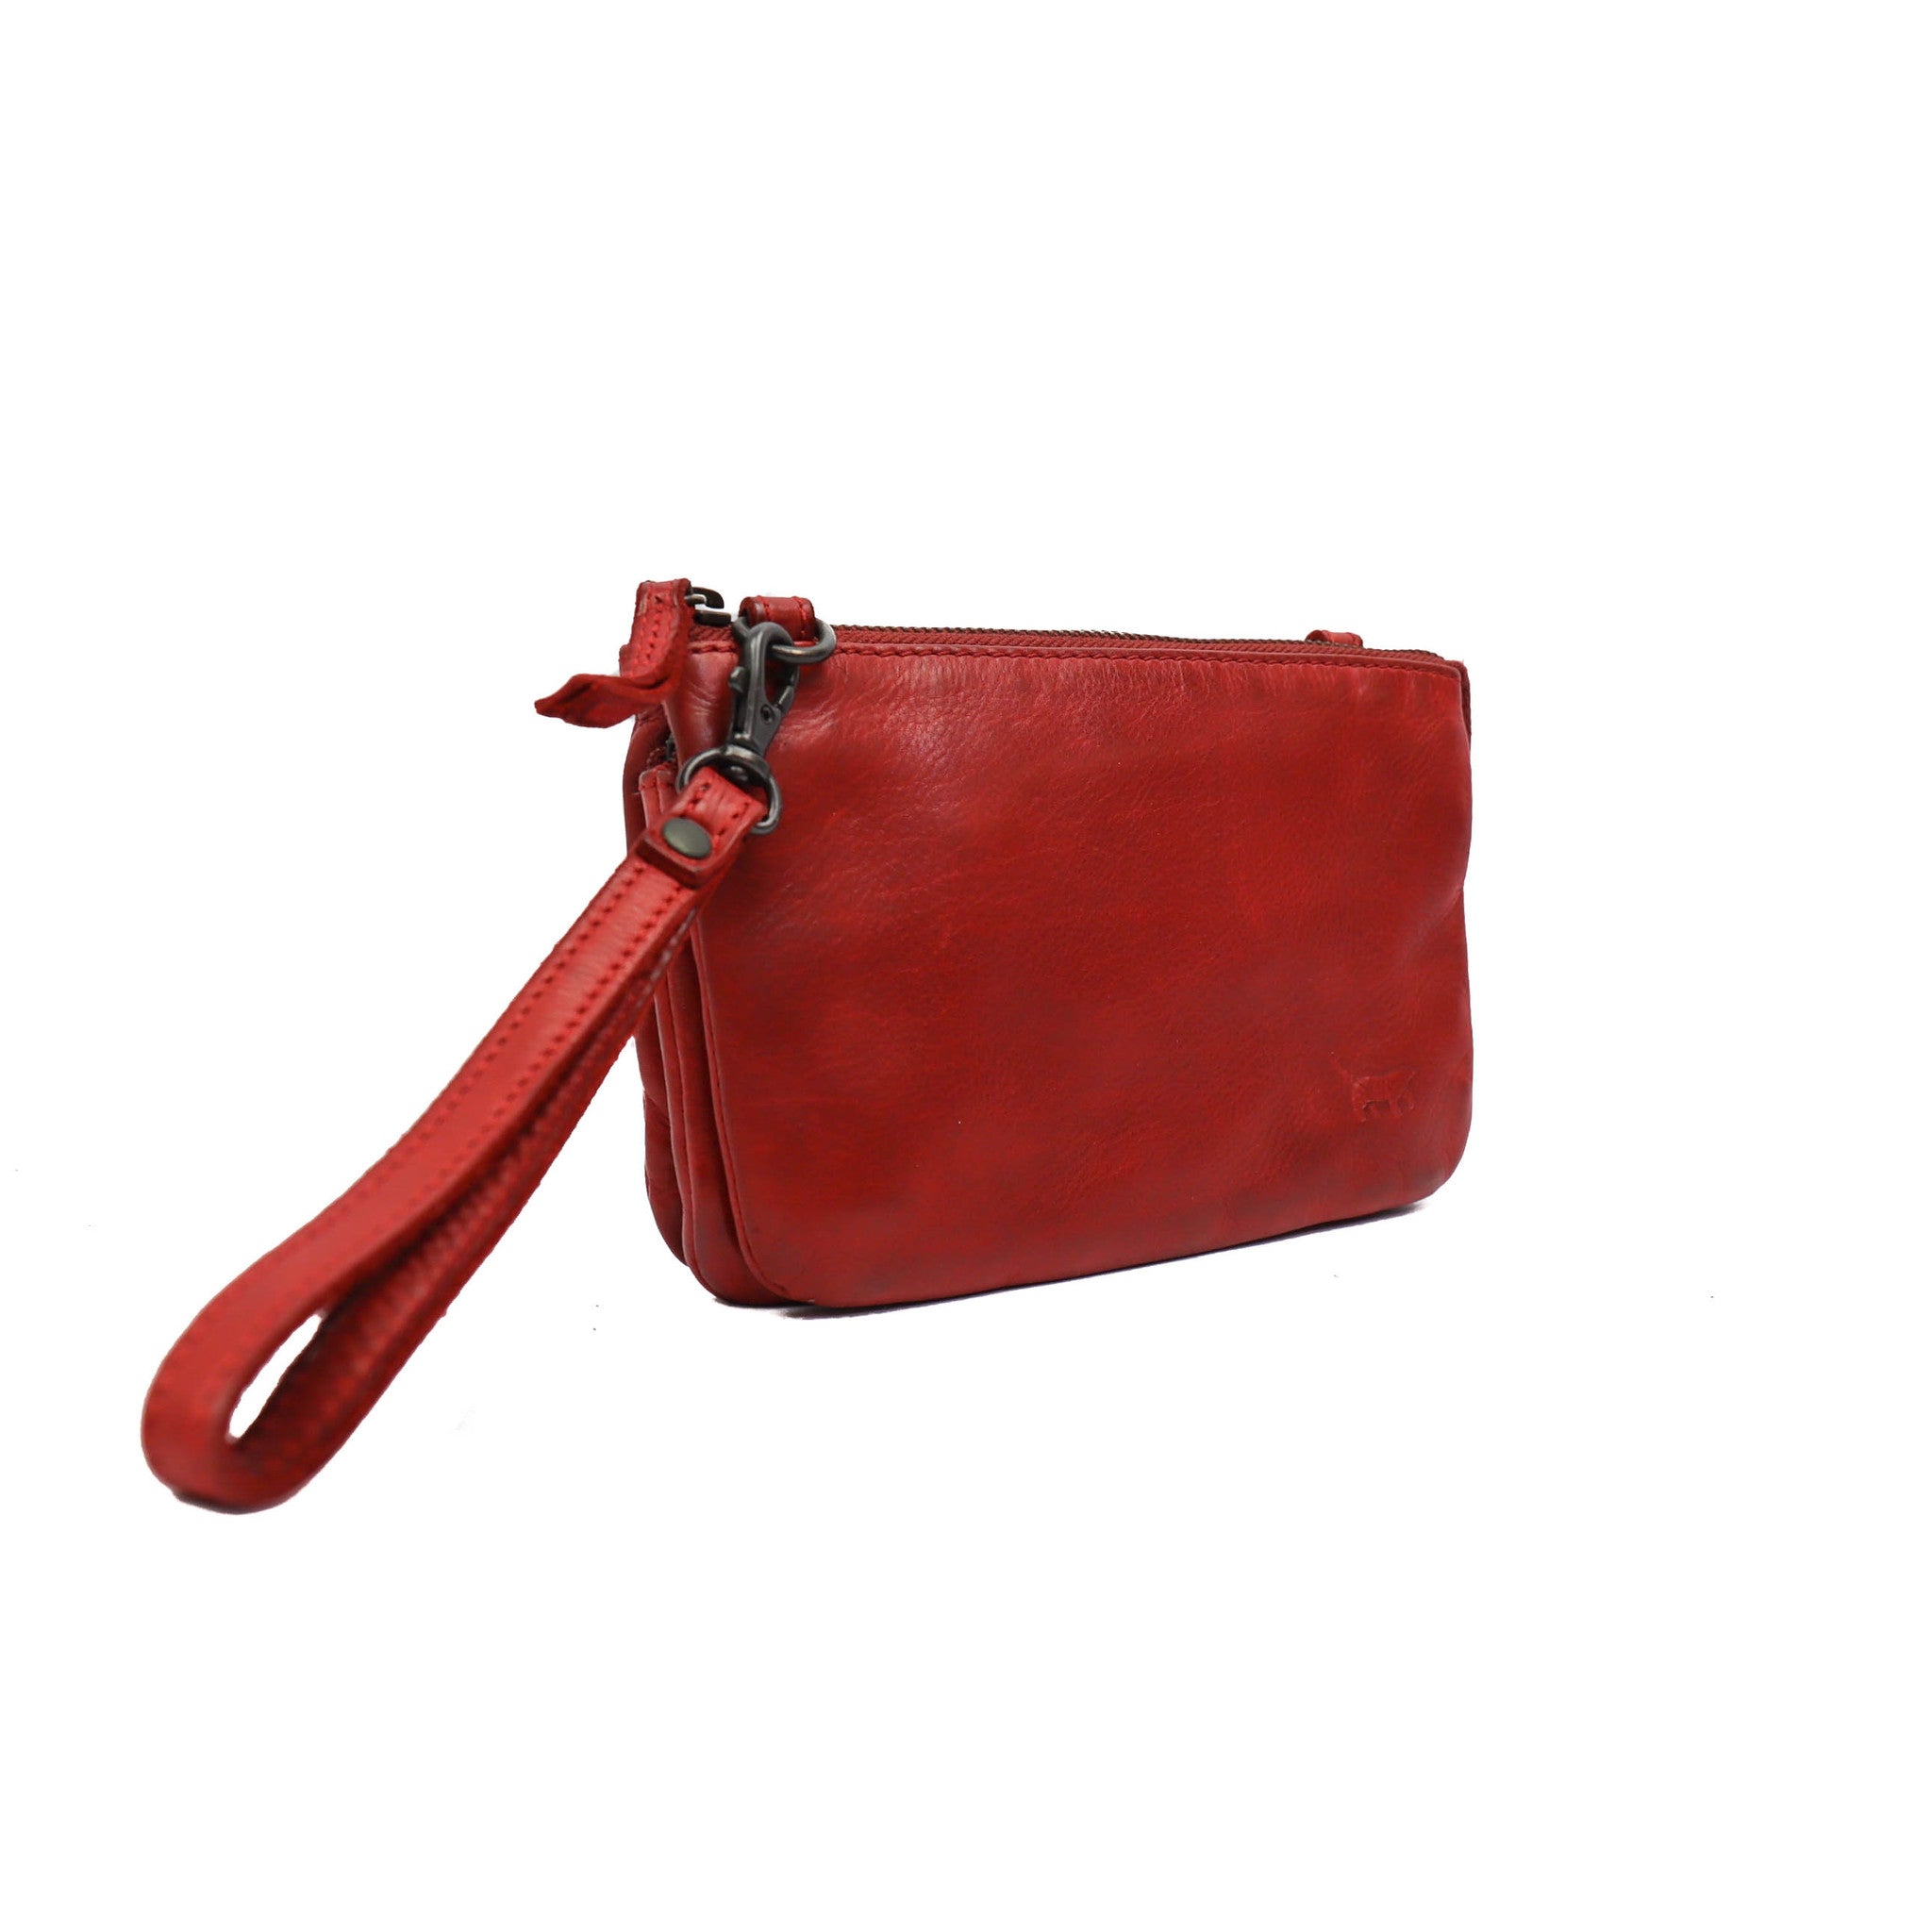 Purse bag 'Umi' red - CL 36799